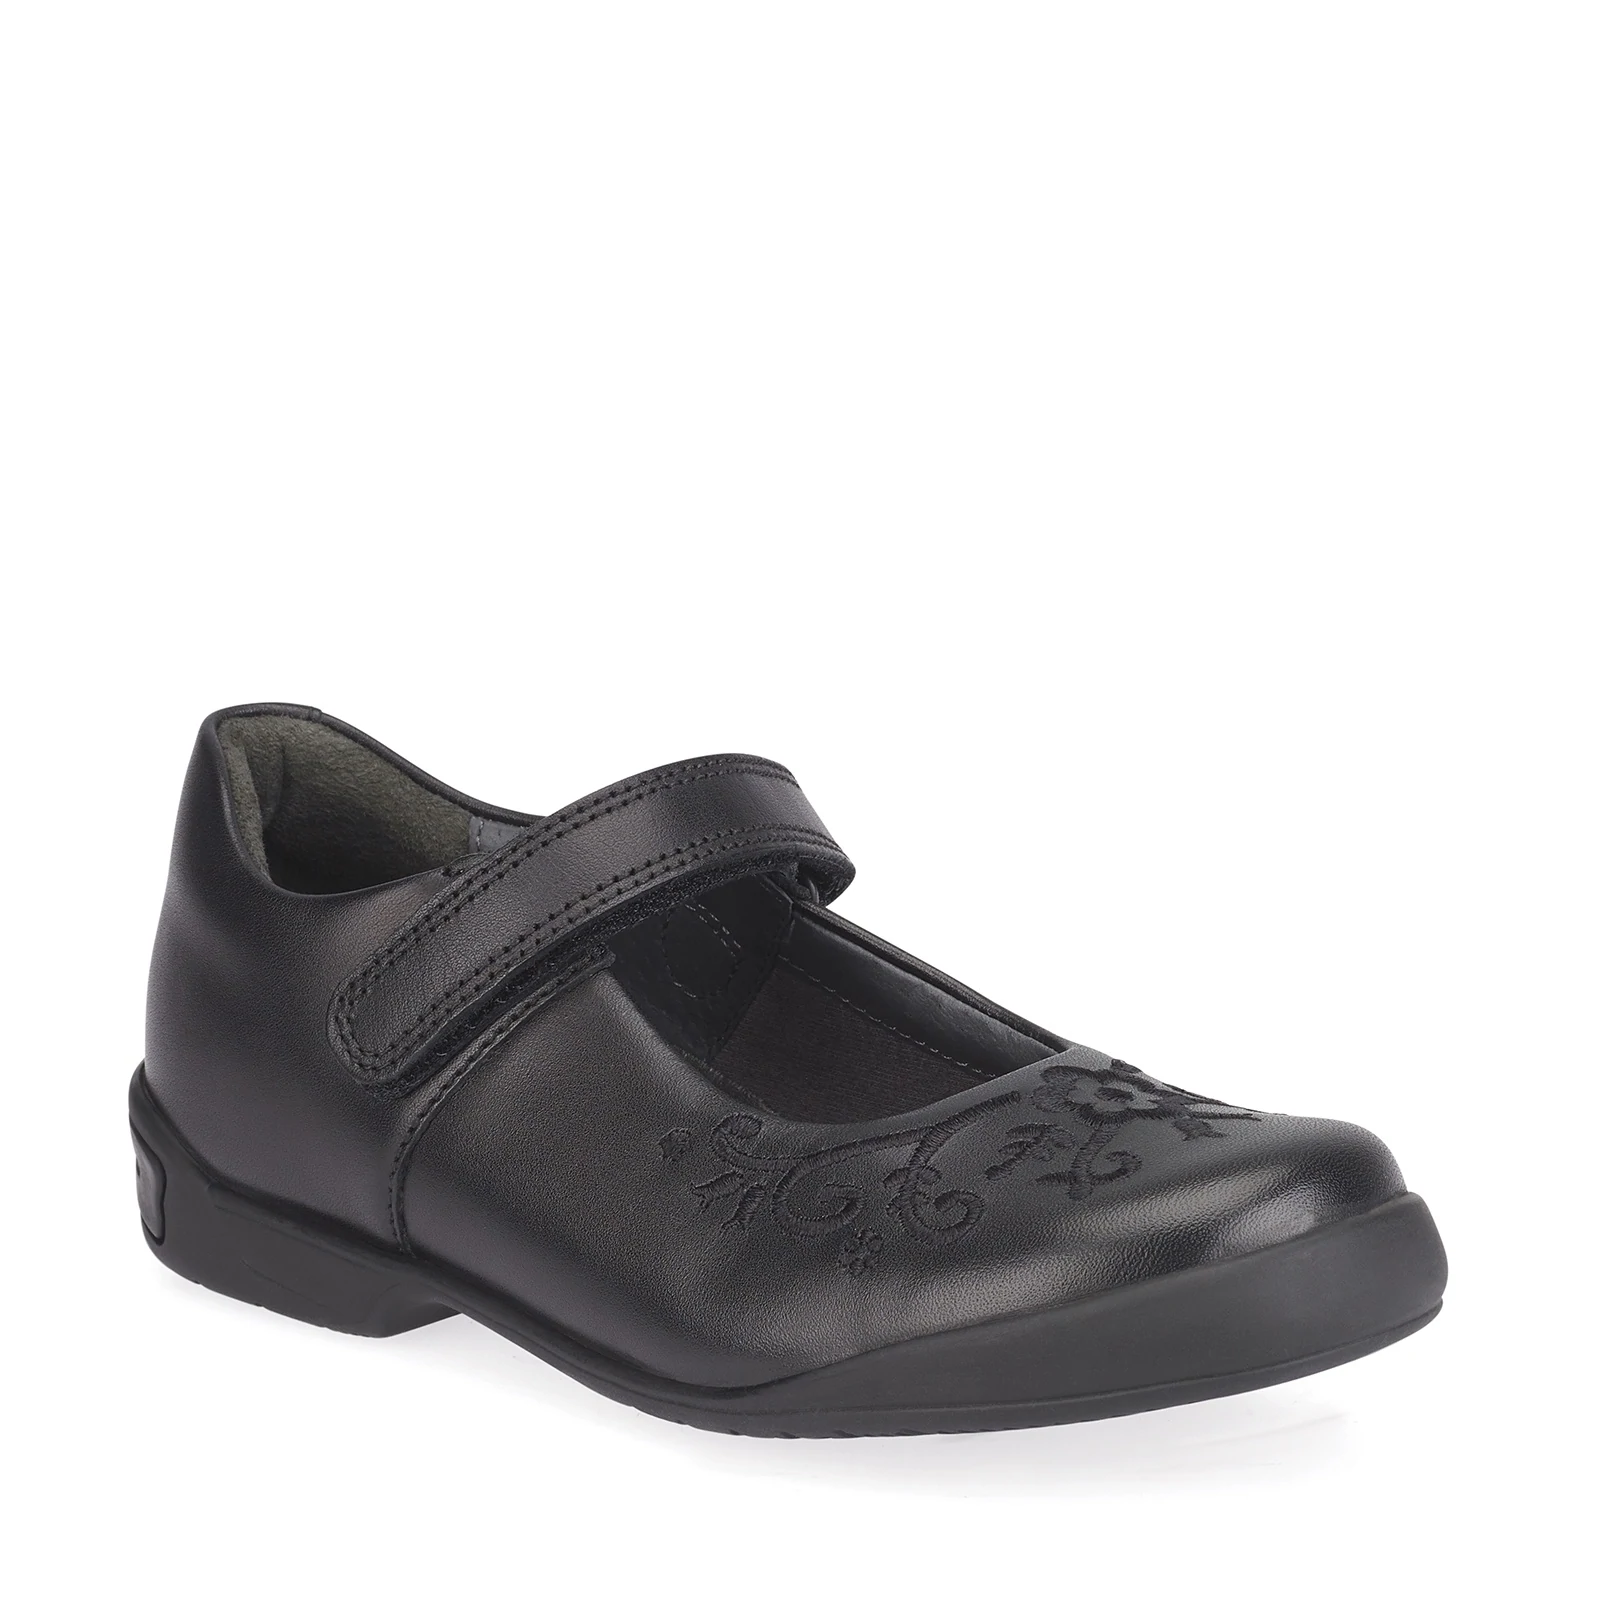 Girls Black Leather Mary Jane Shoe 